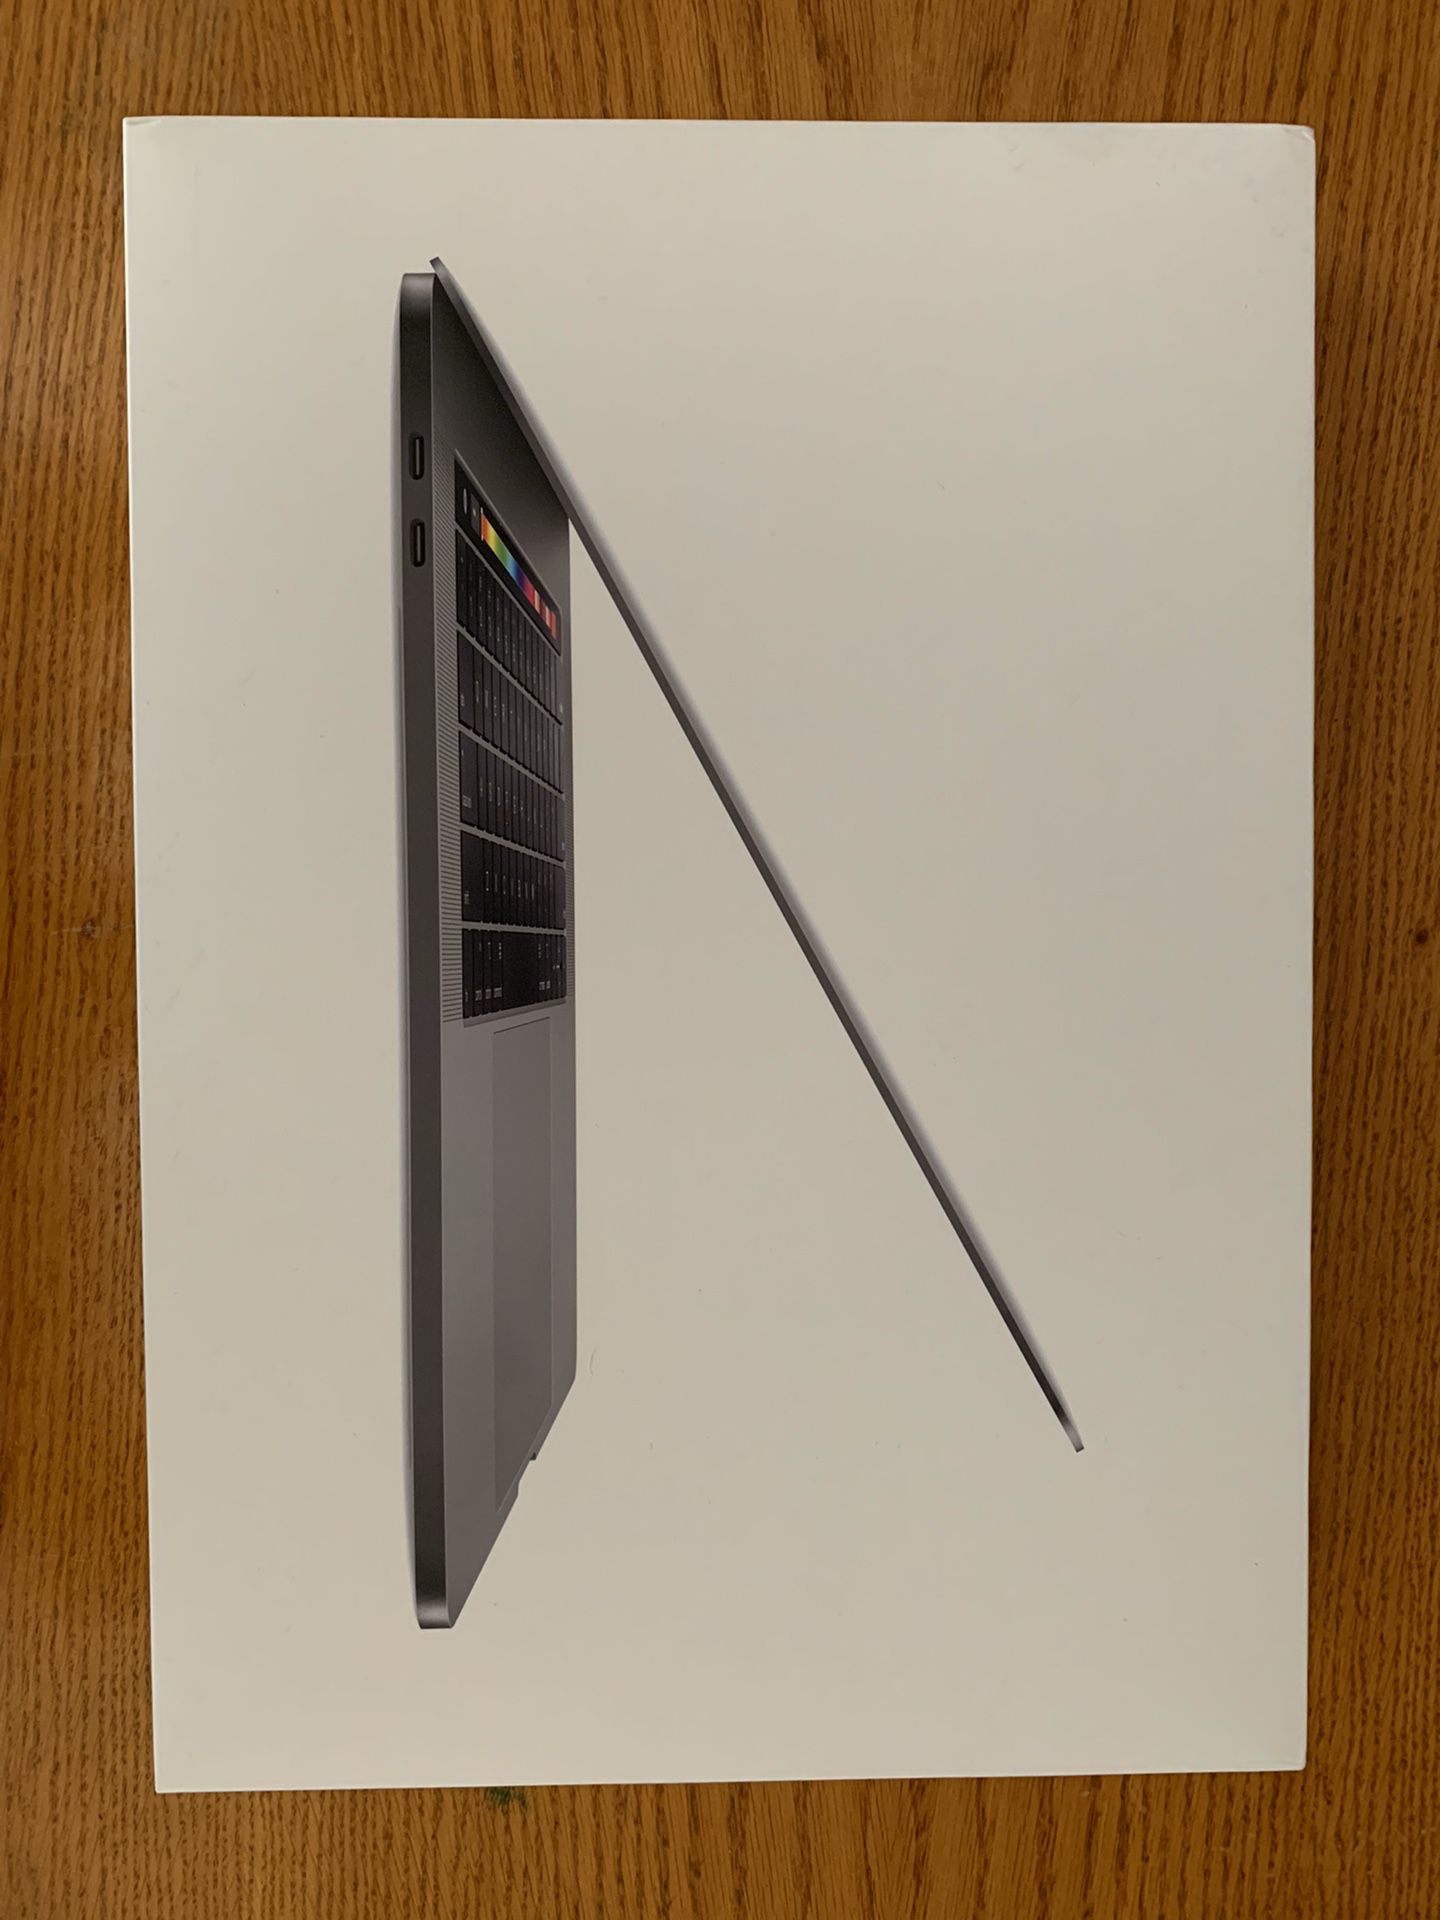 2018 15” MacBook Pro